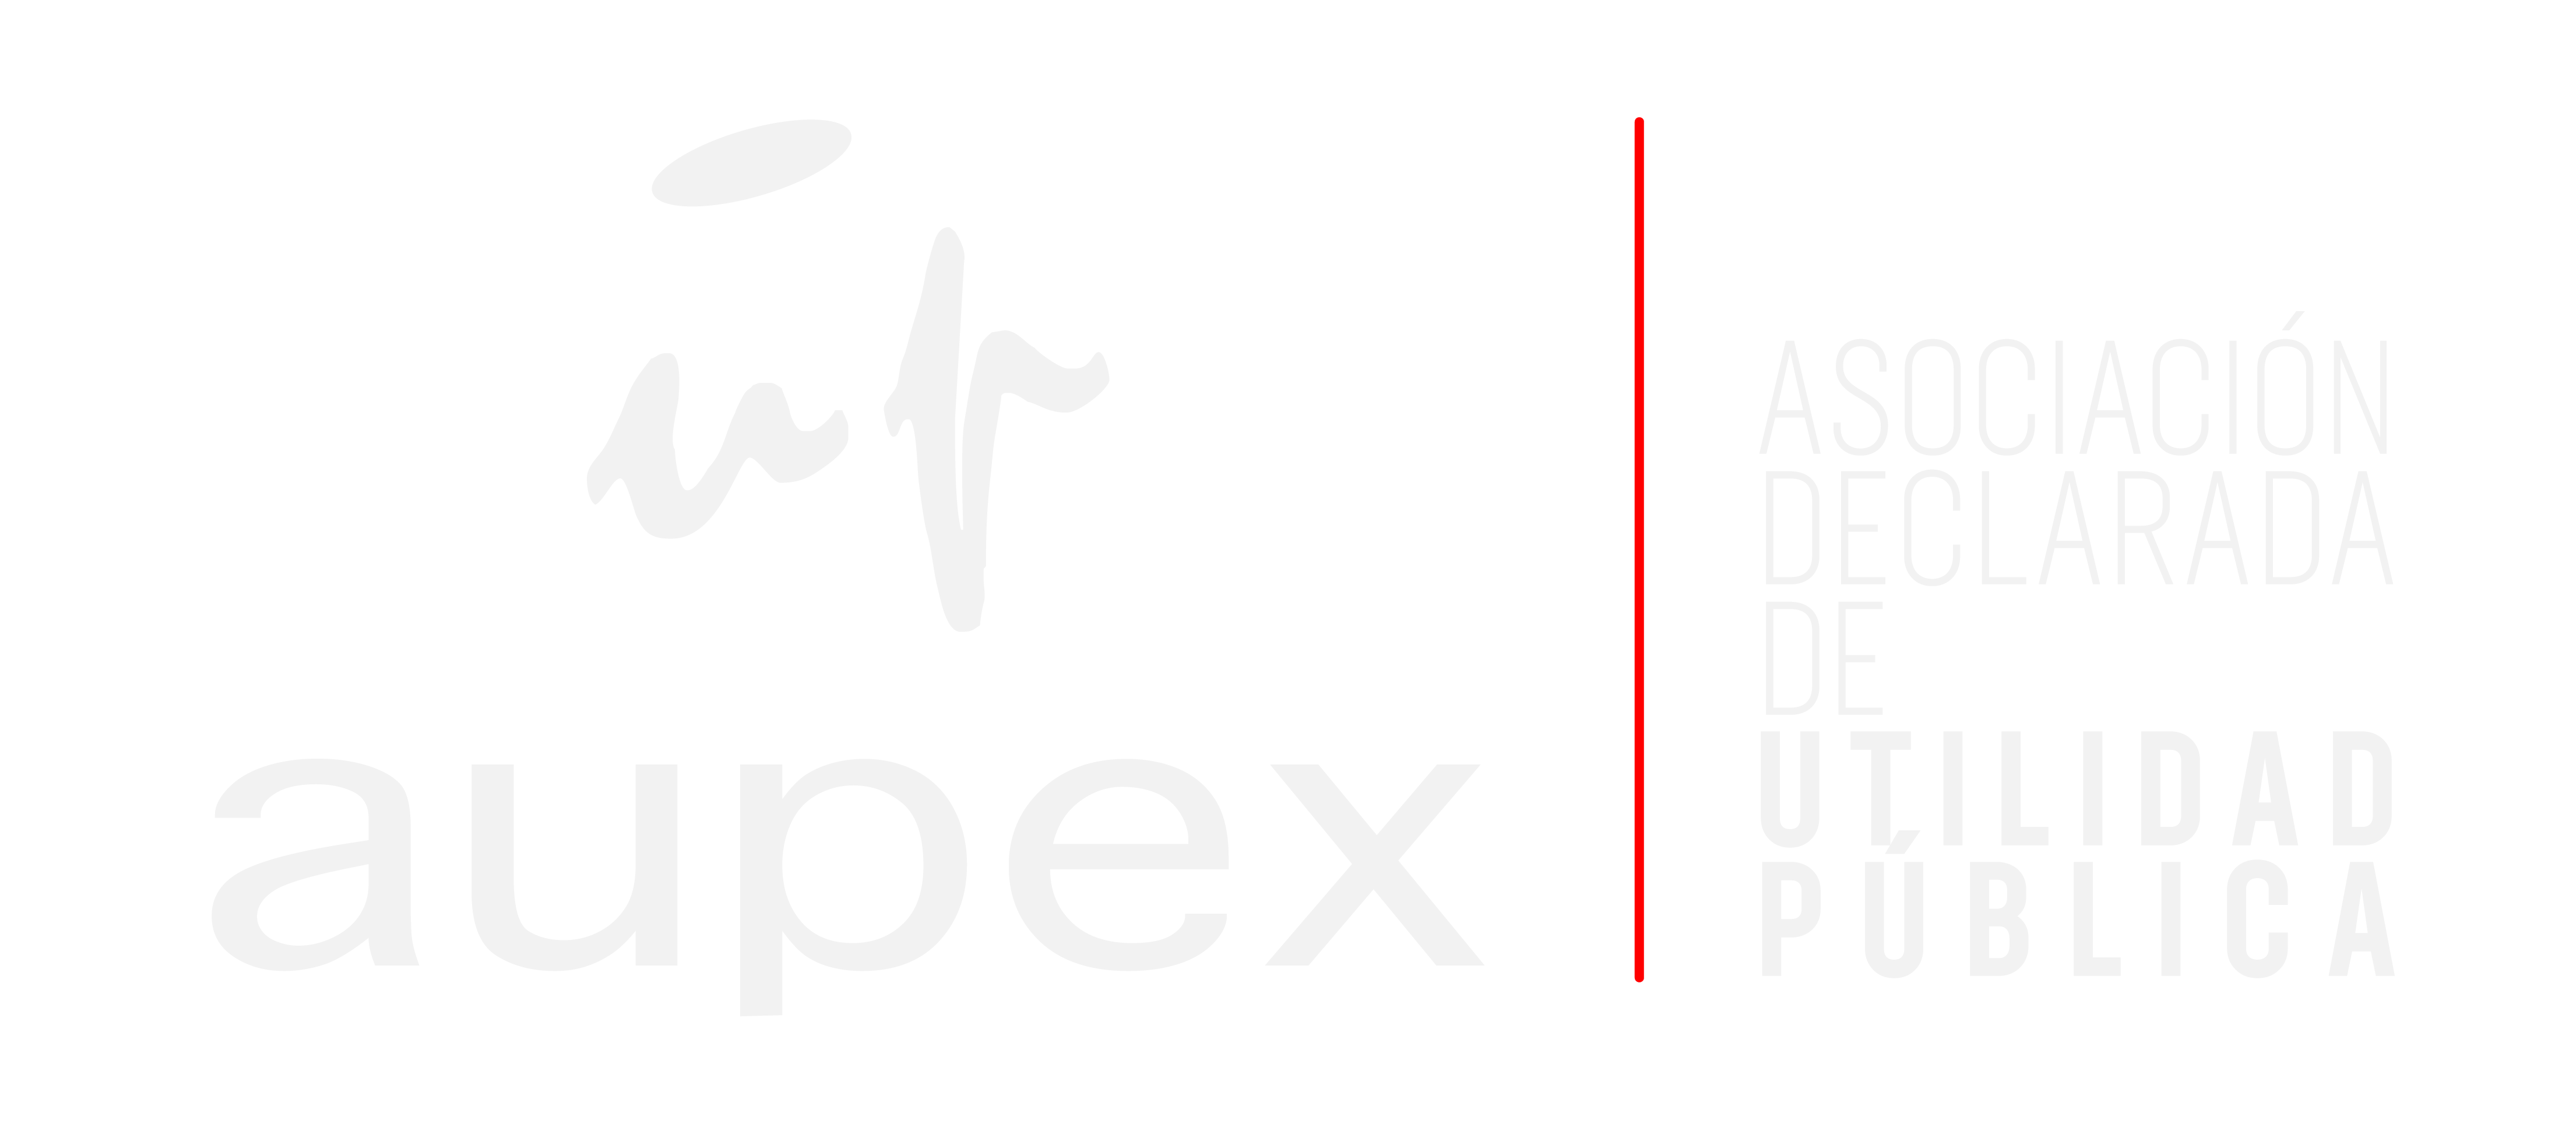 Logo Aupex